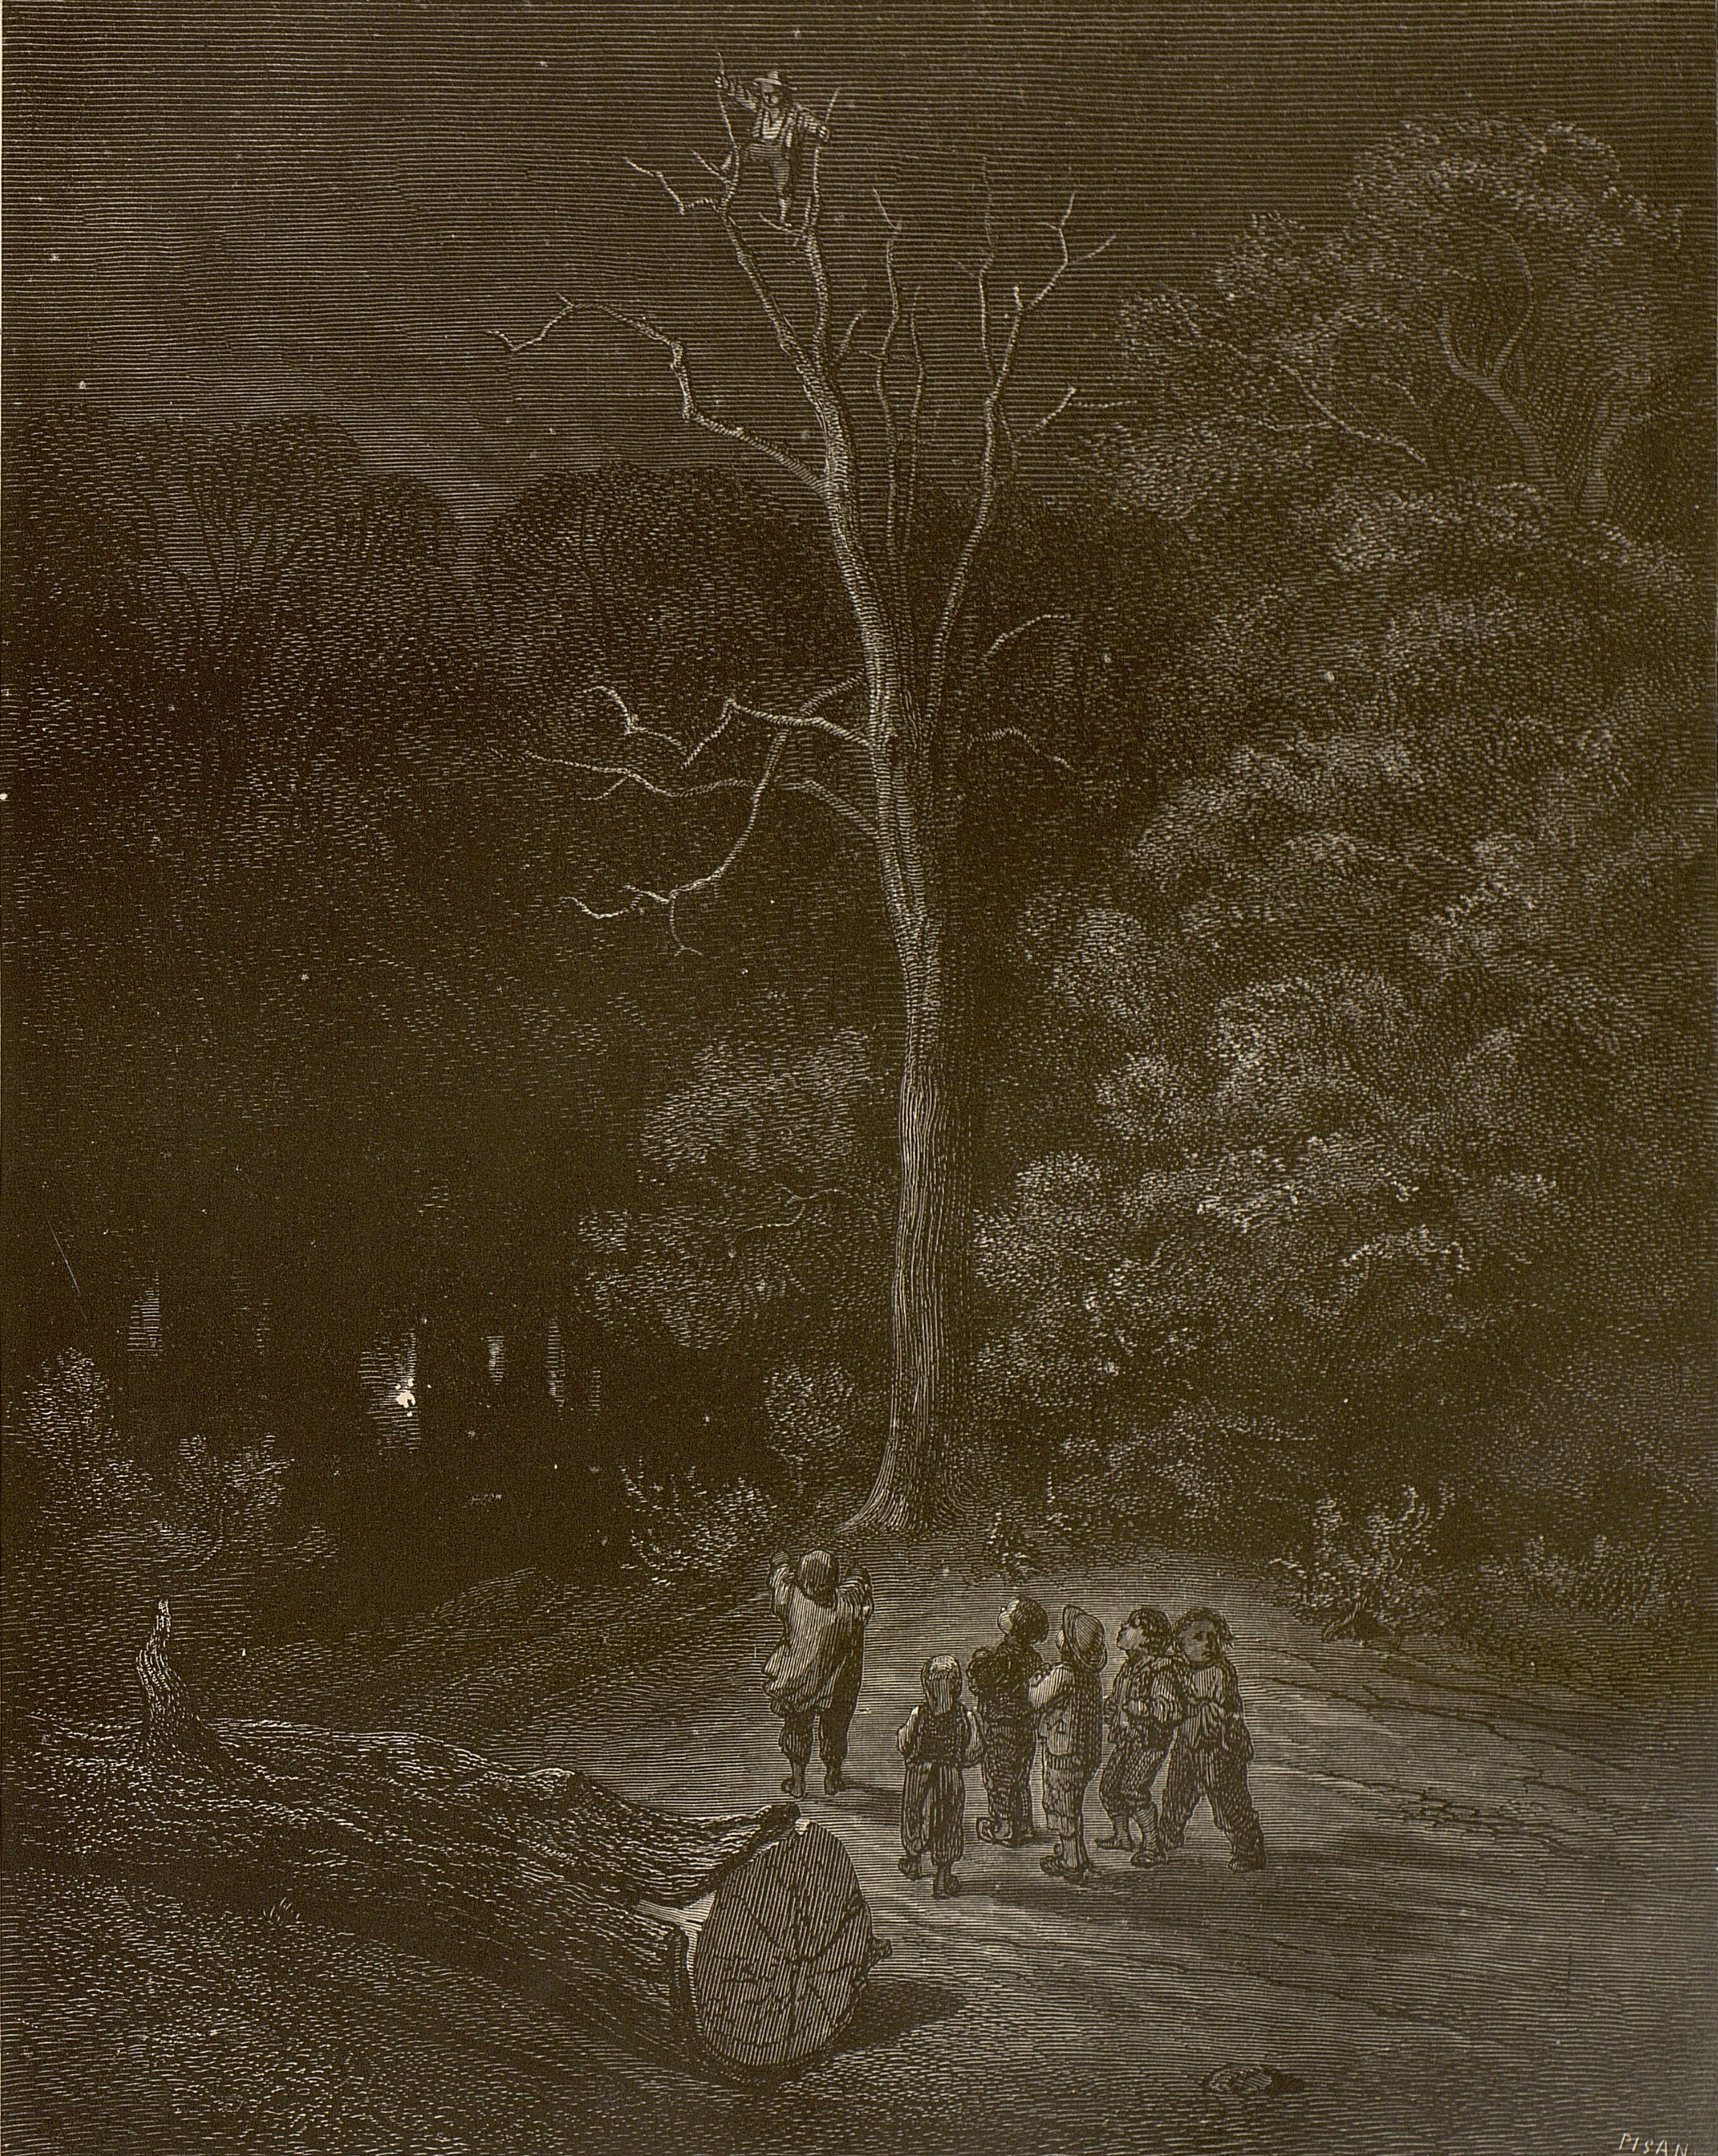 Mörk skog där sex barn står under ett dött träd där en sjunde klättrat upp för att spana på omgivningarna.